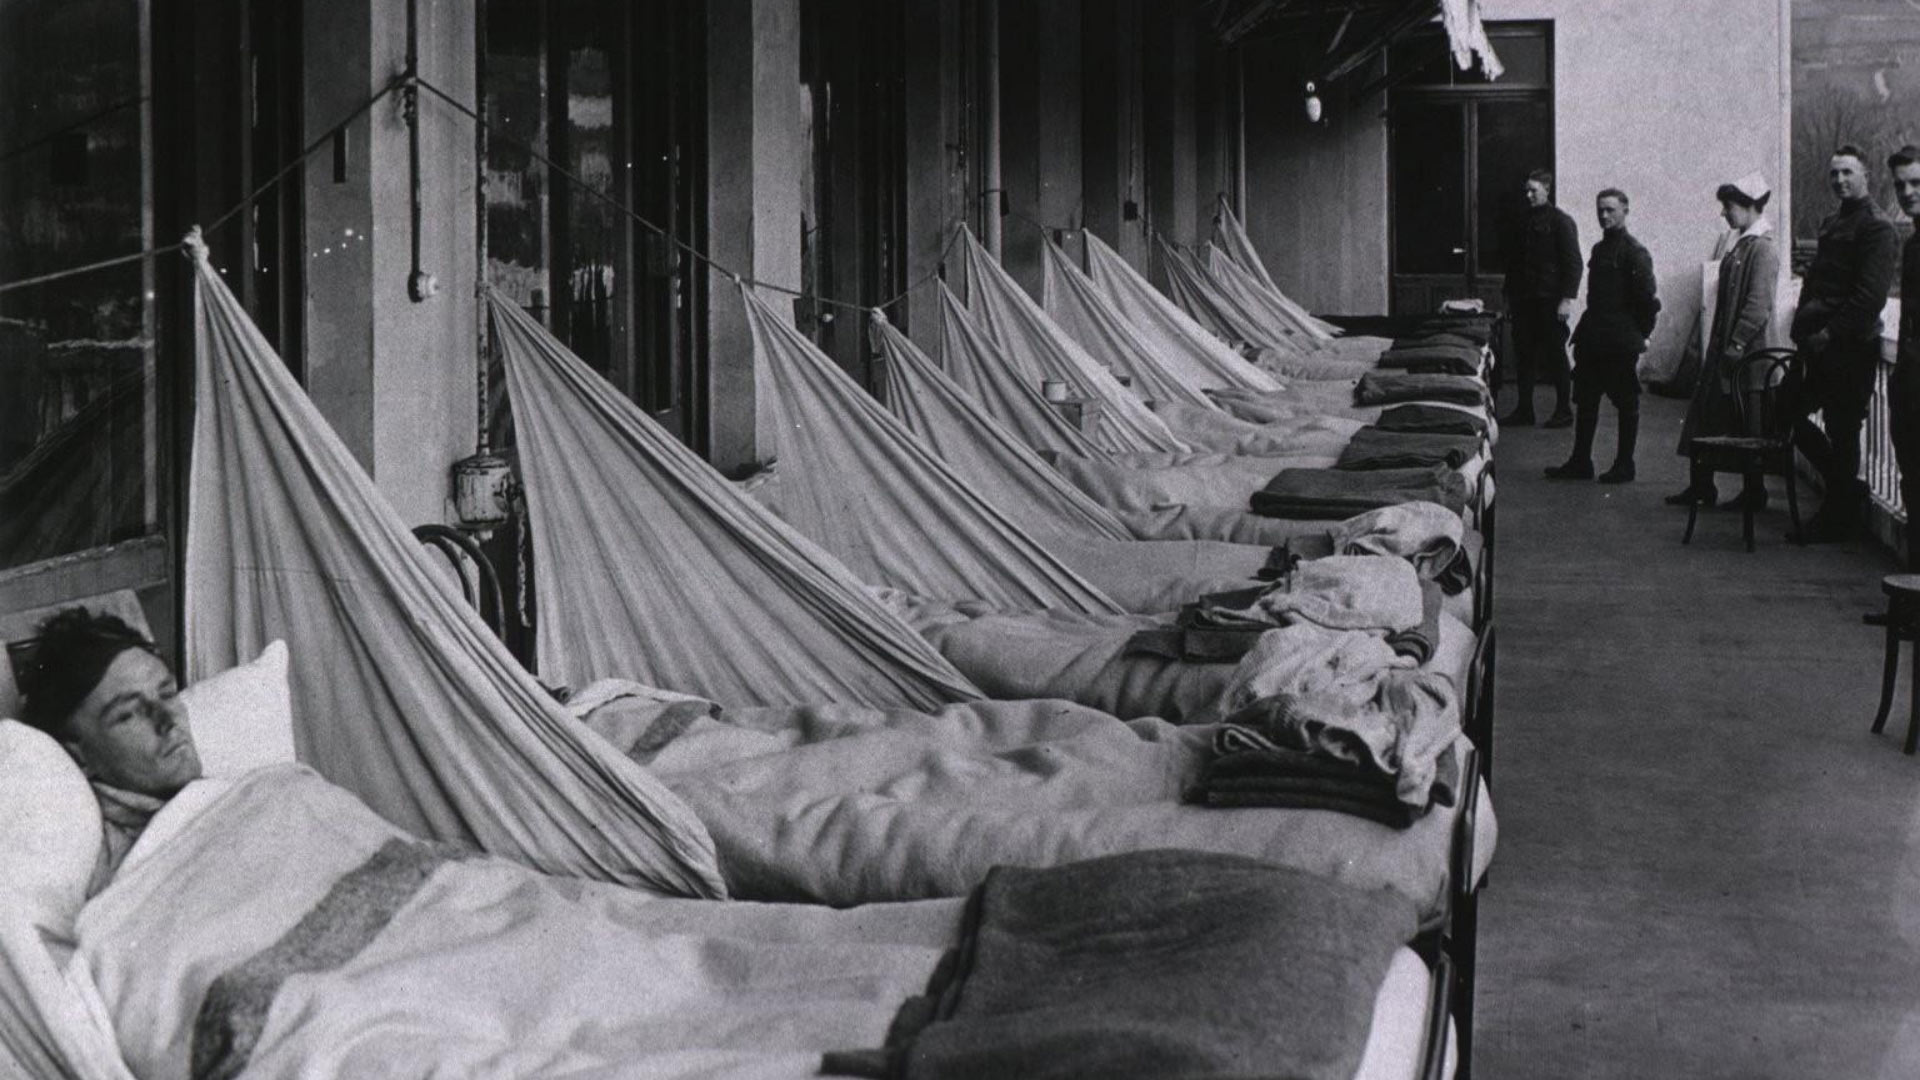 Грипп 1918. Испанка грипп эпидемия 1918. Пандемия гриппа 1918. Испанка или Пандемия гриппа 1918-1919.